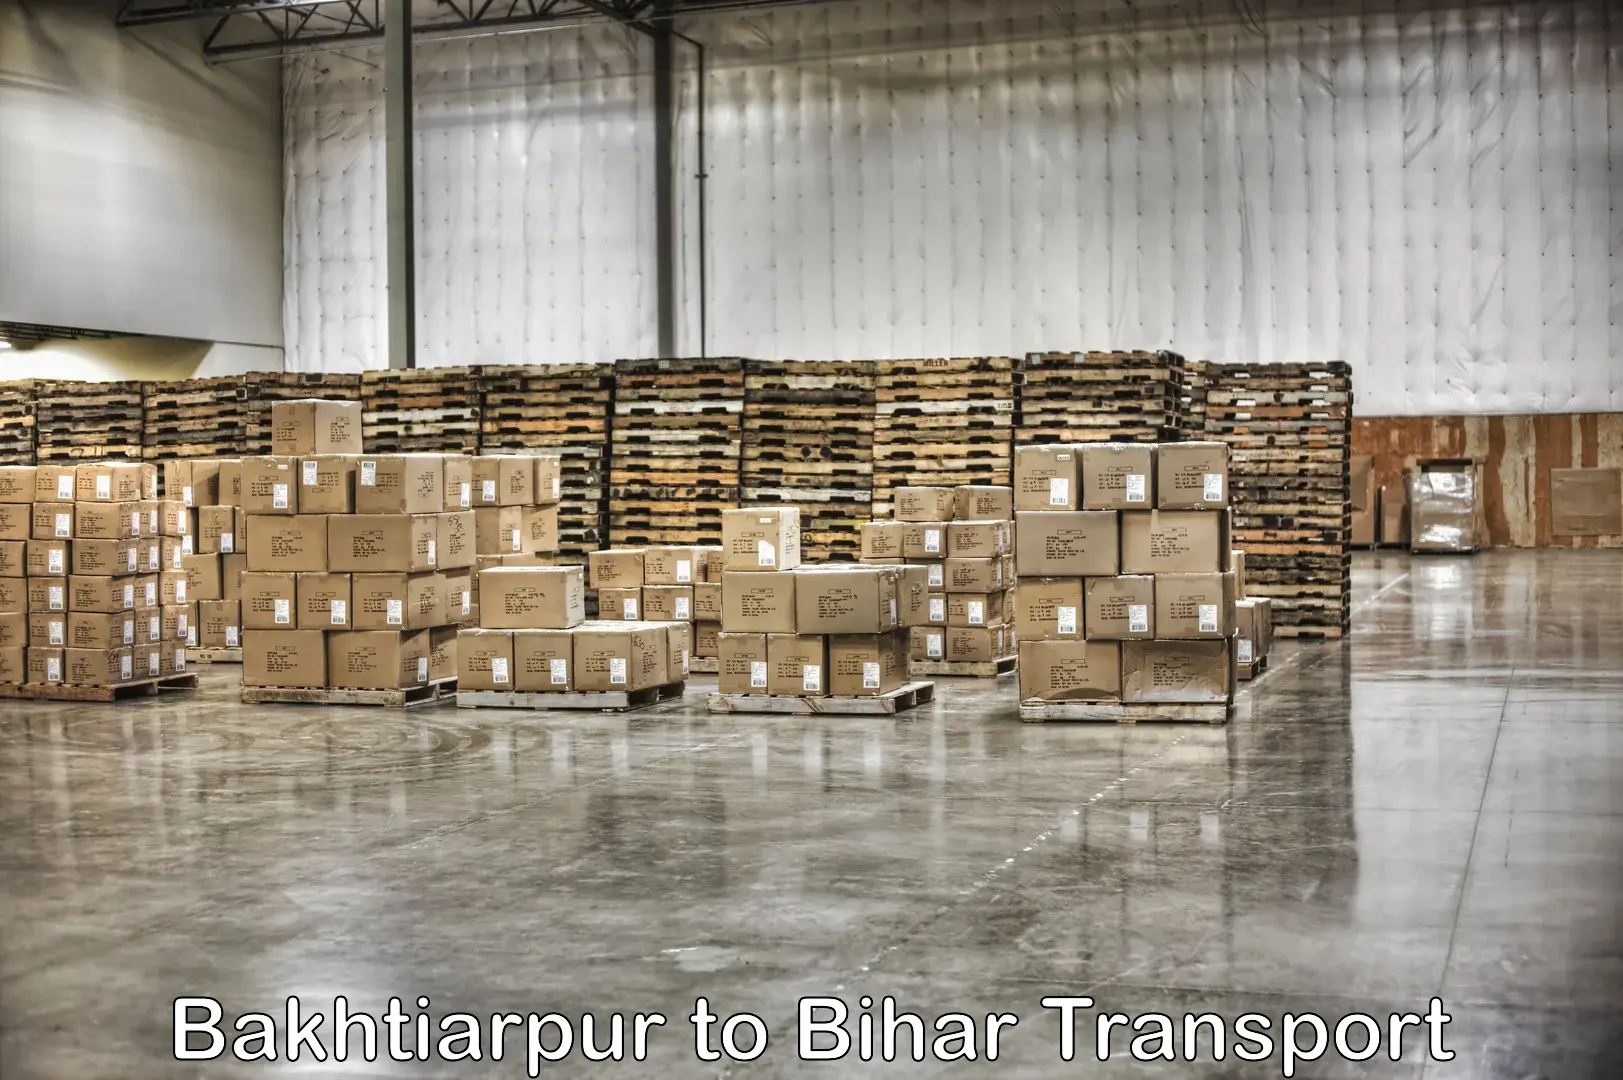 Air cargo transport services Bakhtiarpur to Bankipore